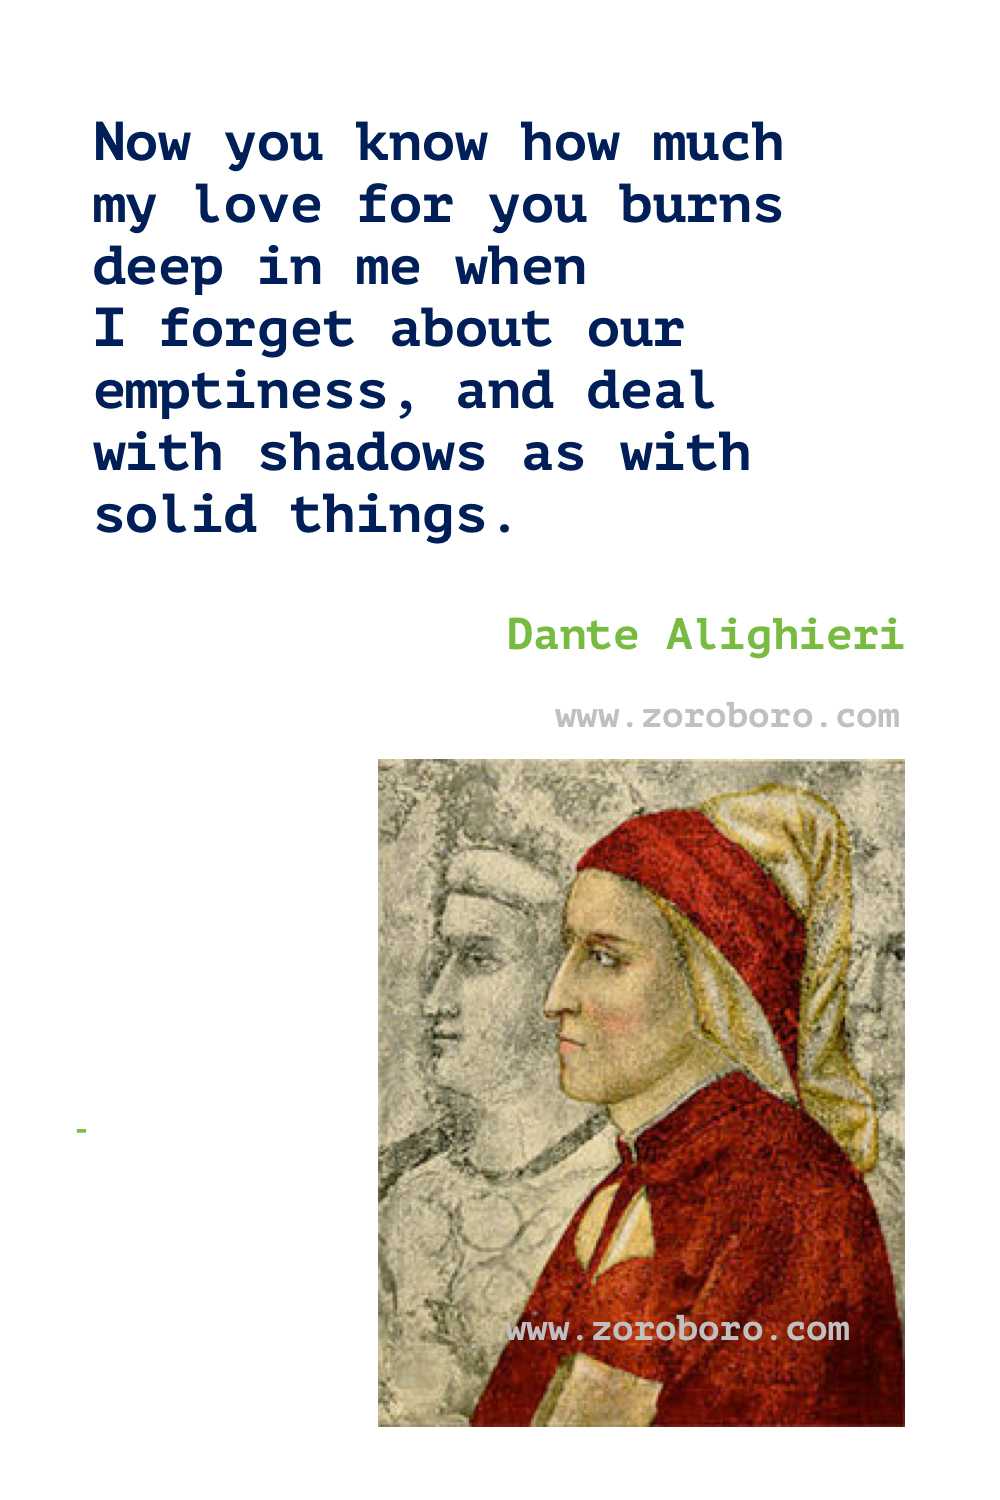 Dante Alighieri Quotes. Dante Alighieri Poems. Dante Alighieri Books Quotes. Dante Alighieri The Divine Comedy & Inferno Quotes. Dante Alighieri Quotes. Dante Alighieri Love Quotes. Dante Alighieri Beauty Quotes.